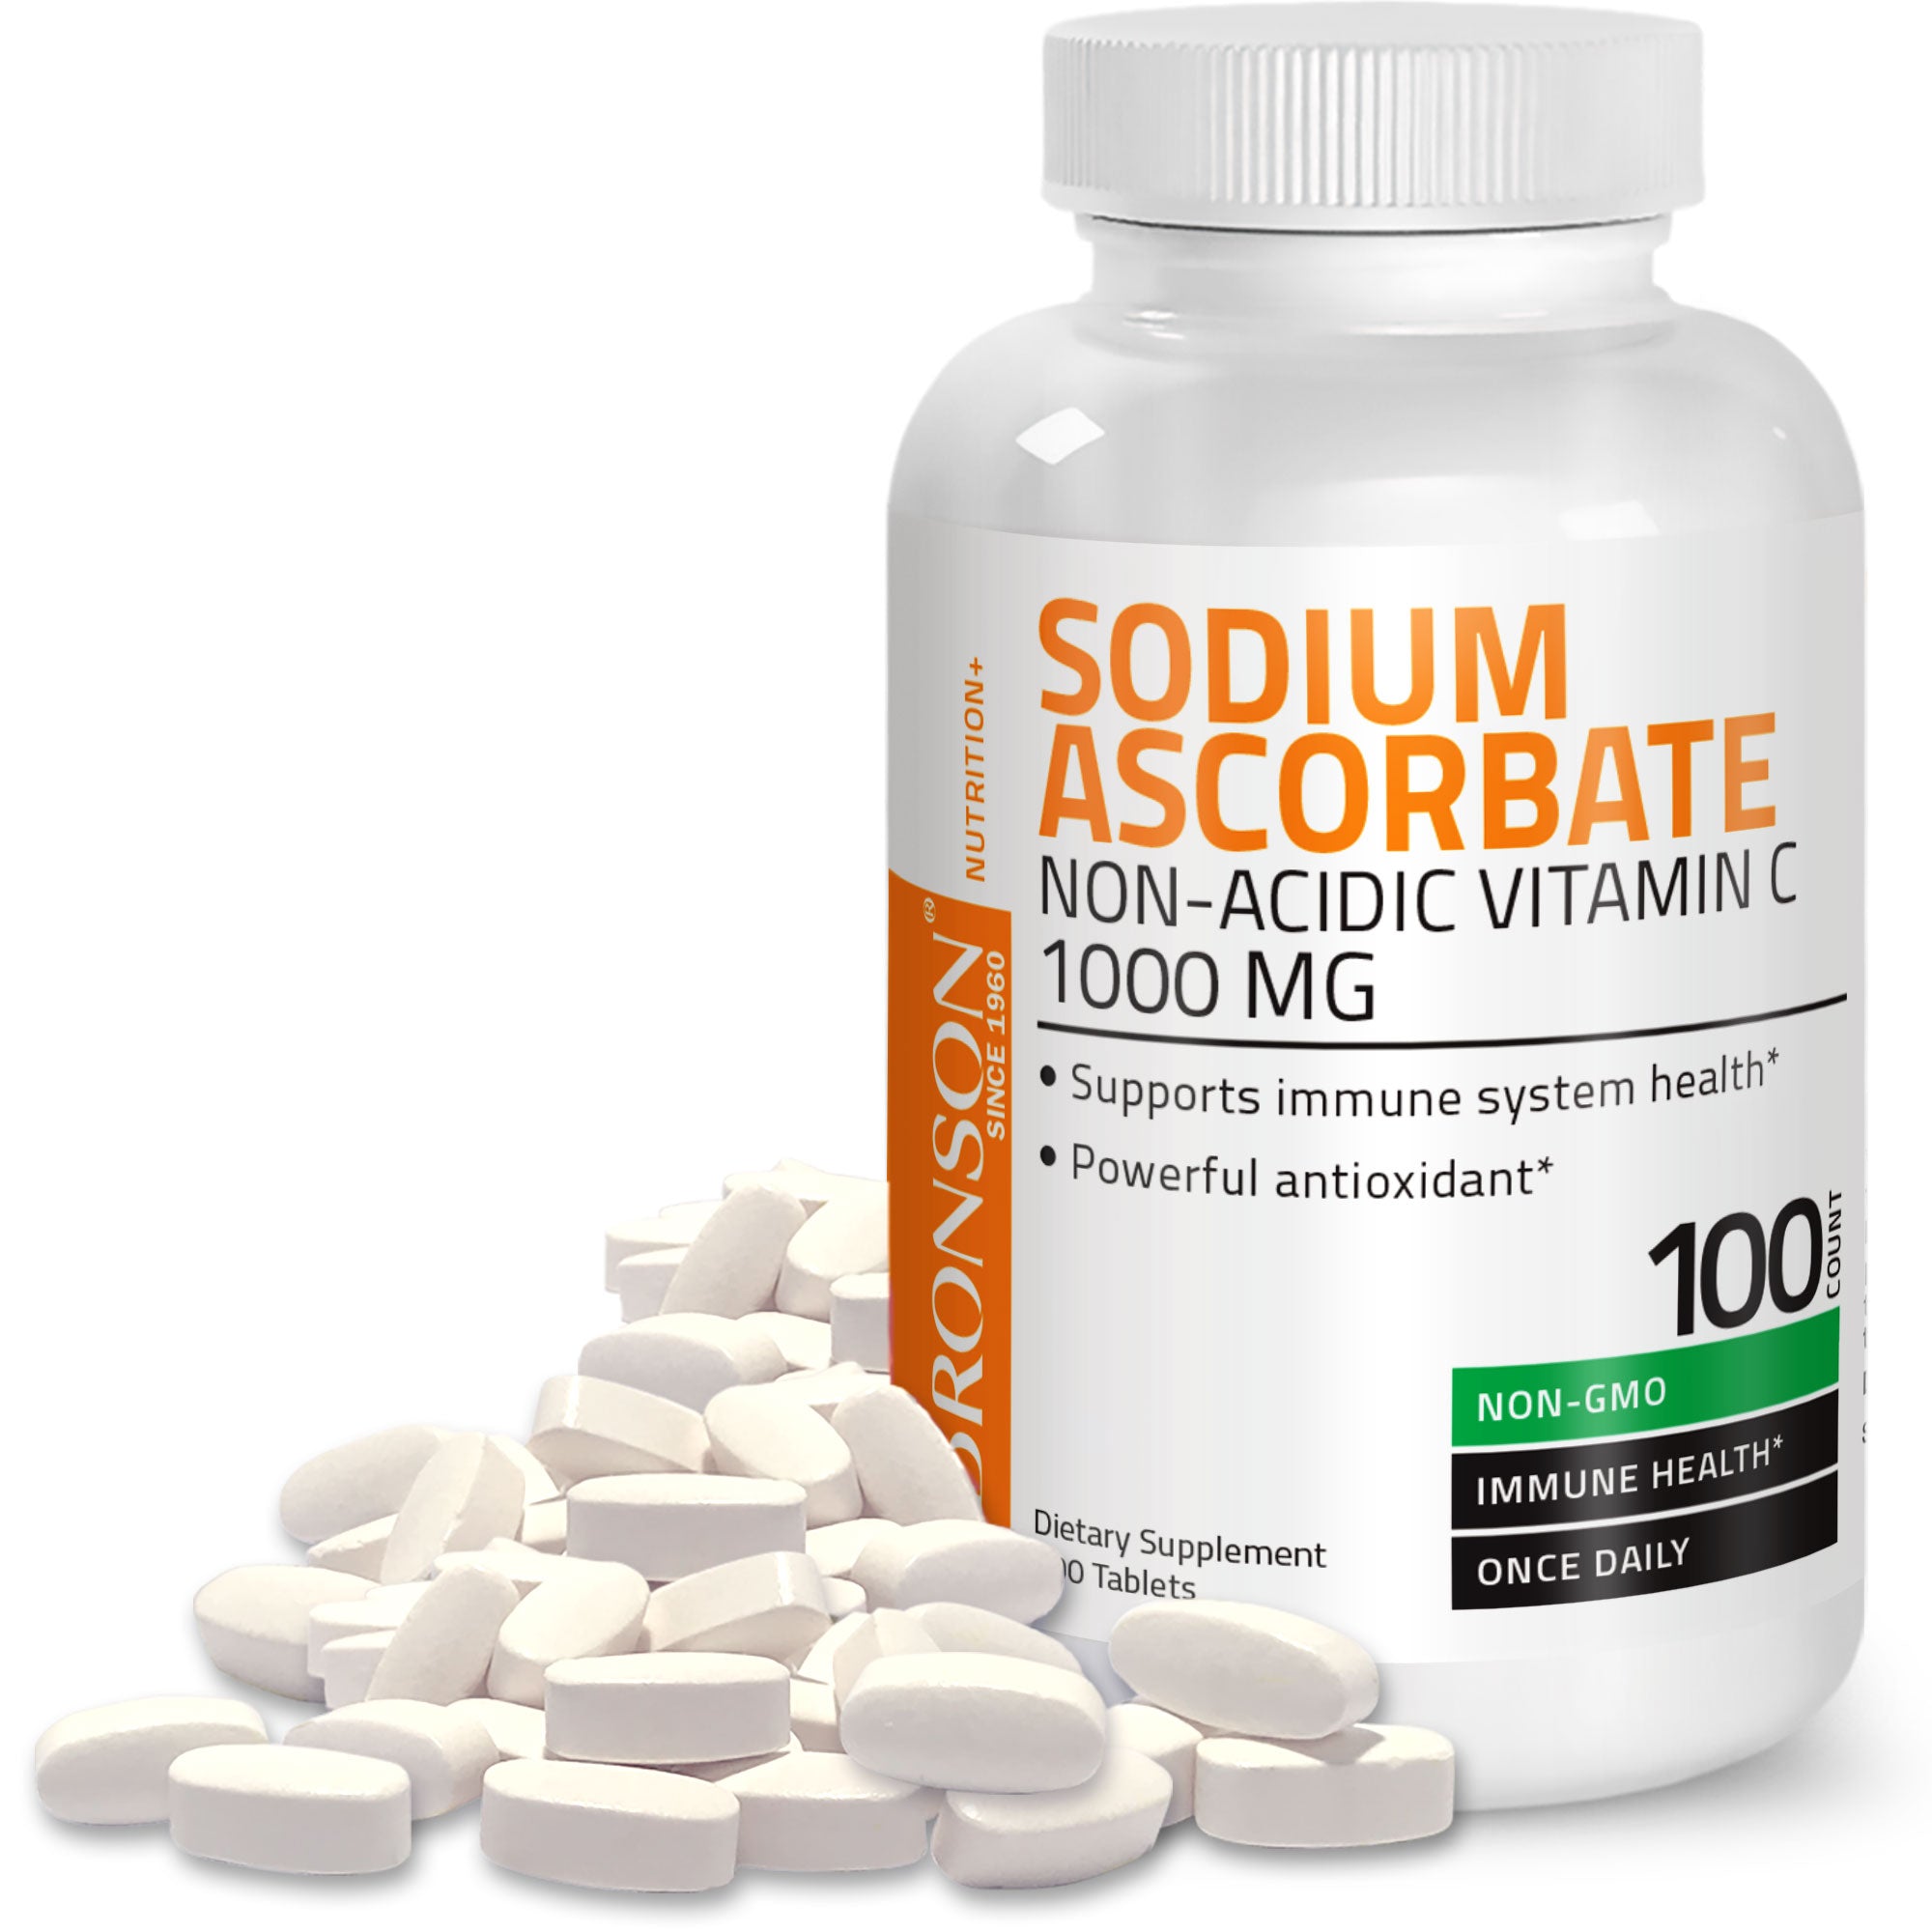 Vitamin C Sodium Ascorbate Non-Acidic Non-GMO - 1000 mg view 7 of 4